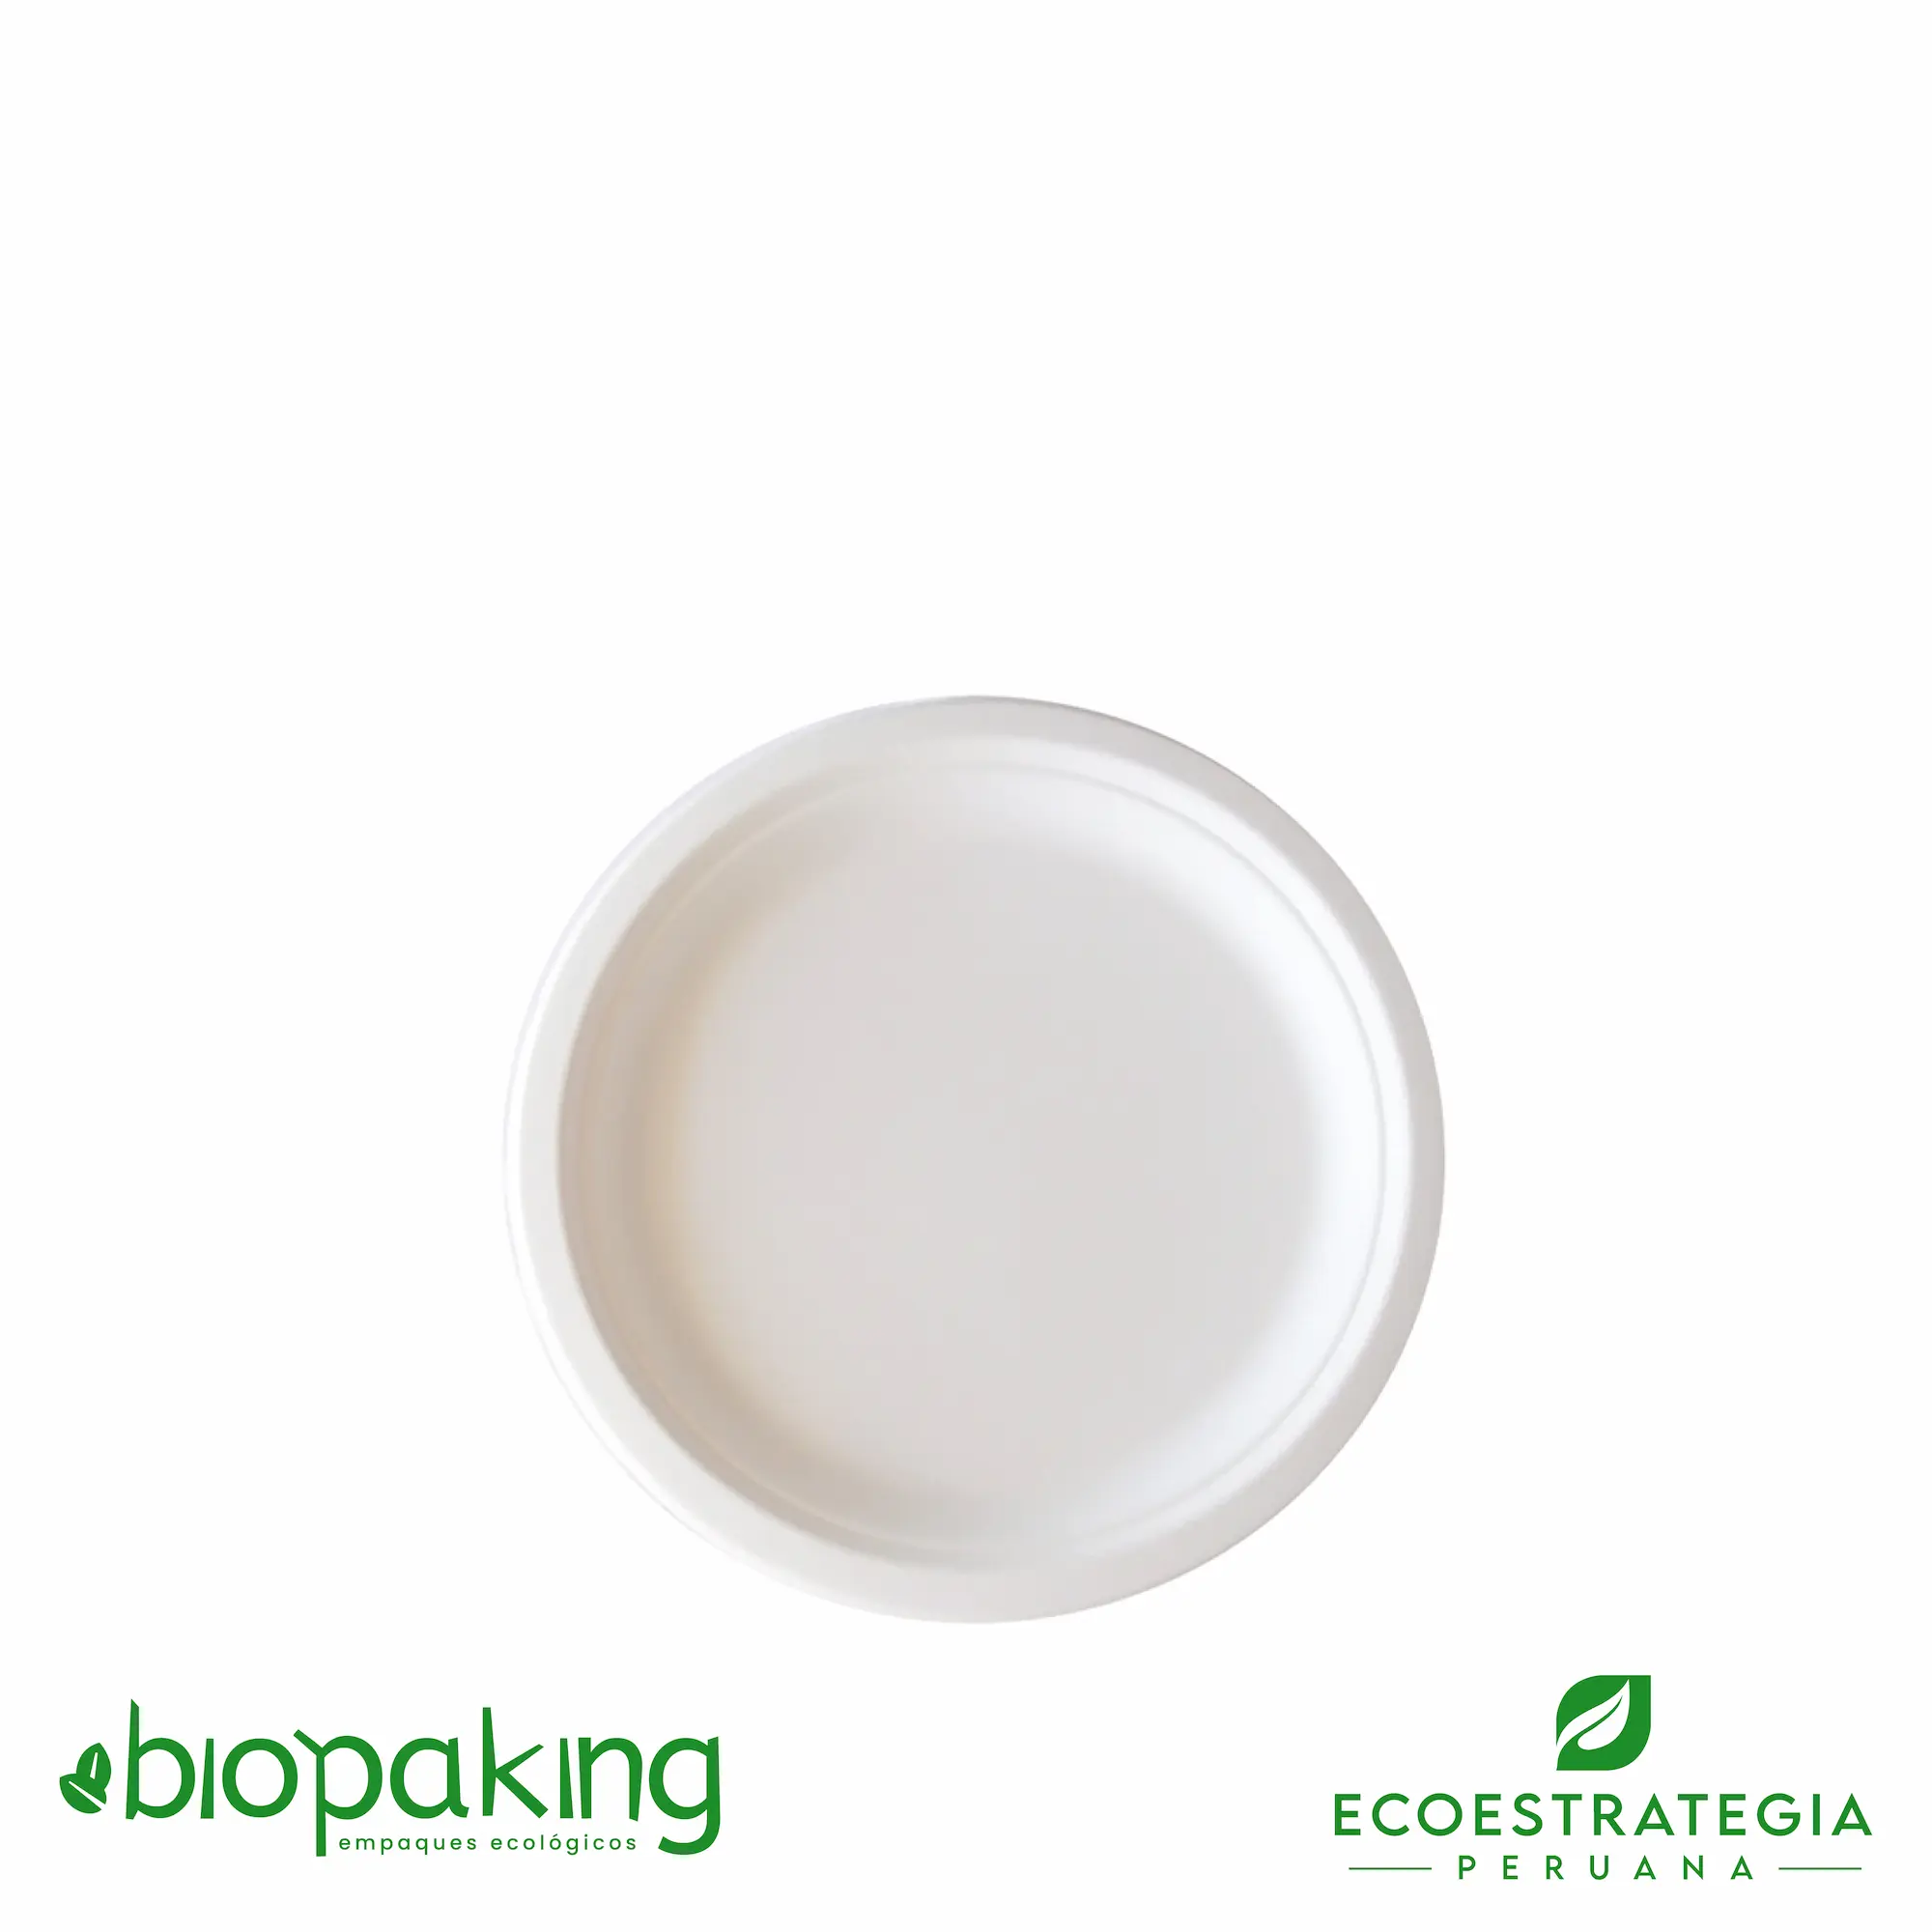 Este plato de 18cm, es un producto de materiales biodegradables, hecho a base de fibra de caña de azúcar. Cotiza envases, empaques y tapers para comidas